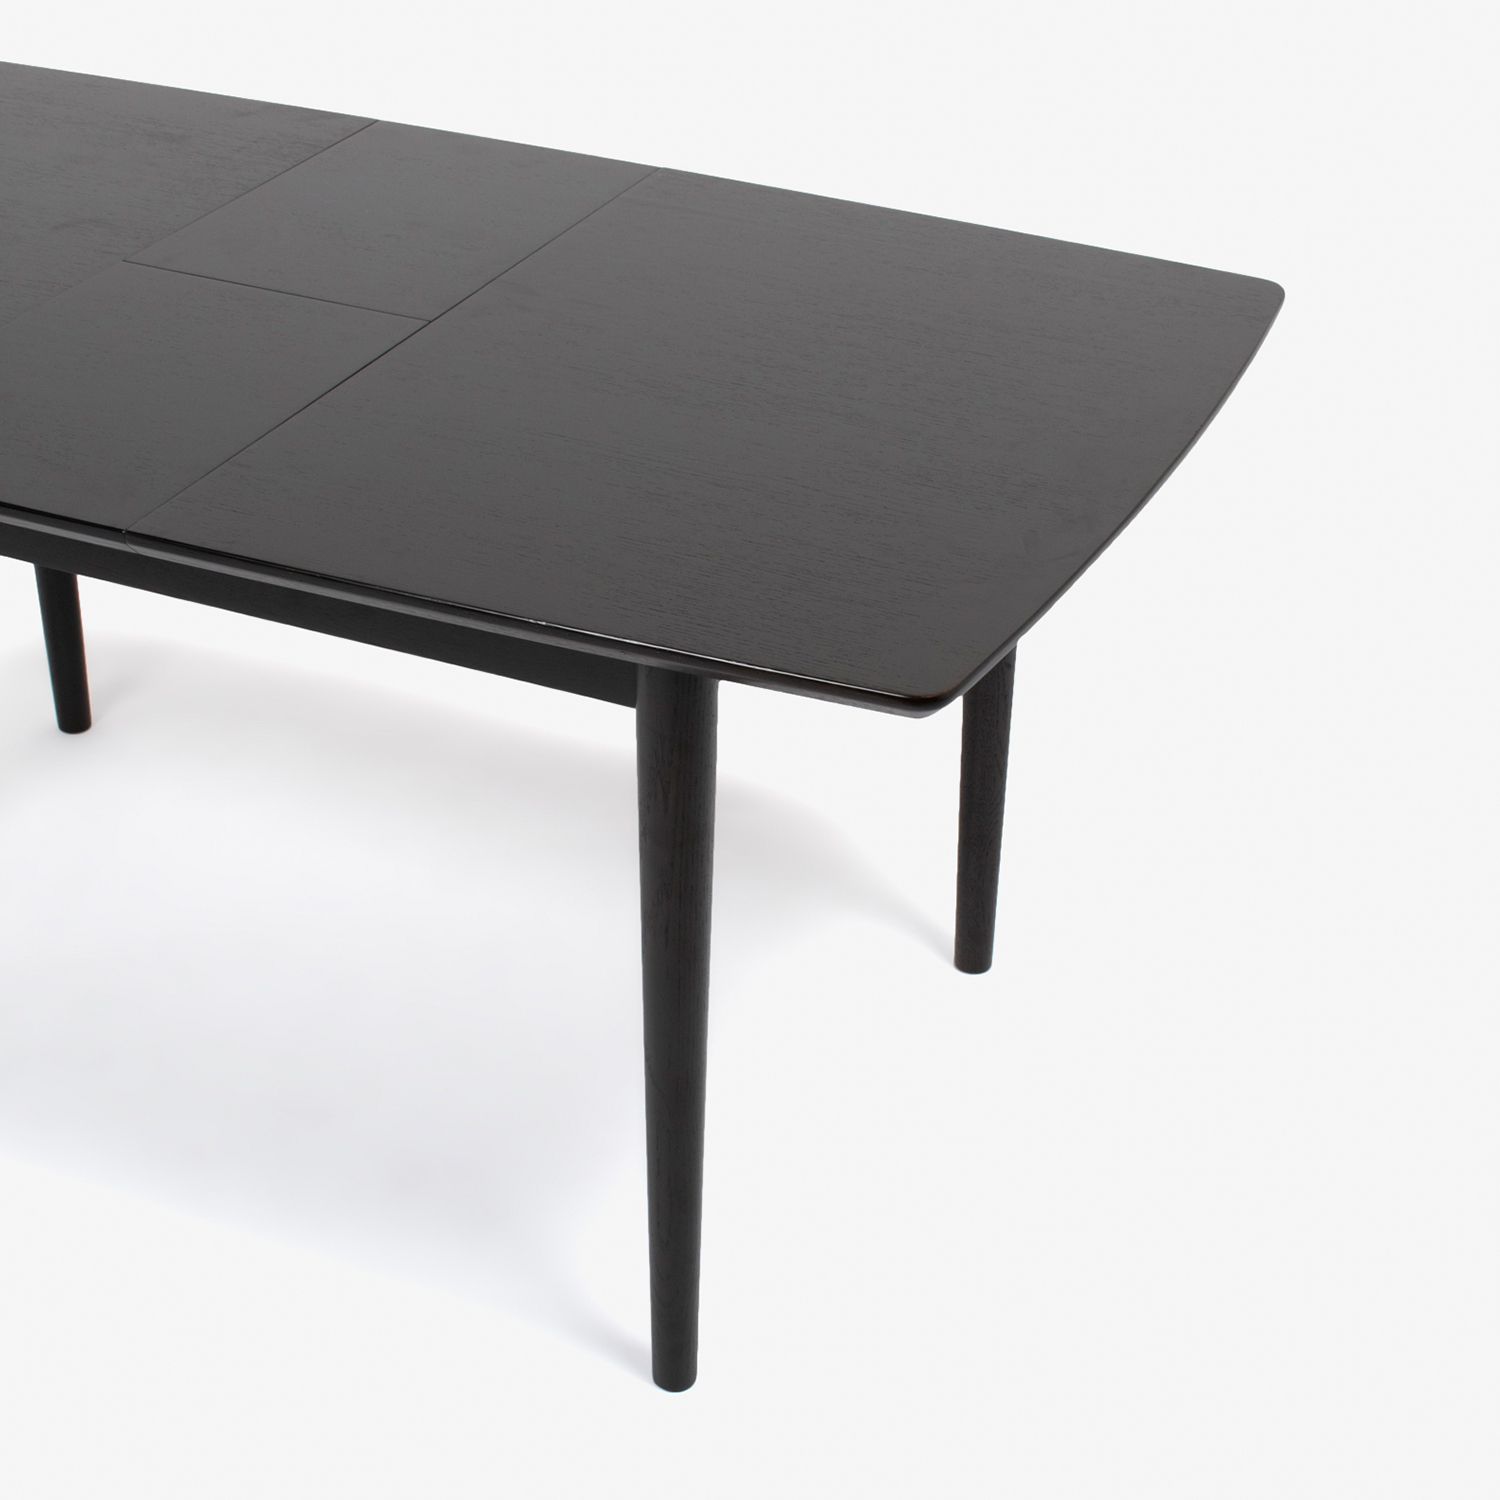 伸長式ダイニングテーブル「ウイング」幅125-155cm ダークブラウン色【決算セールのため30%OFF】